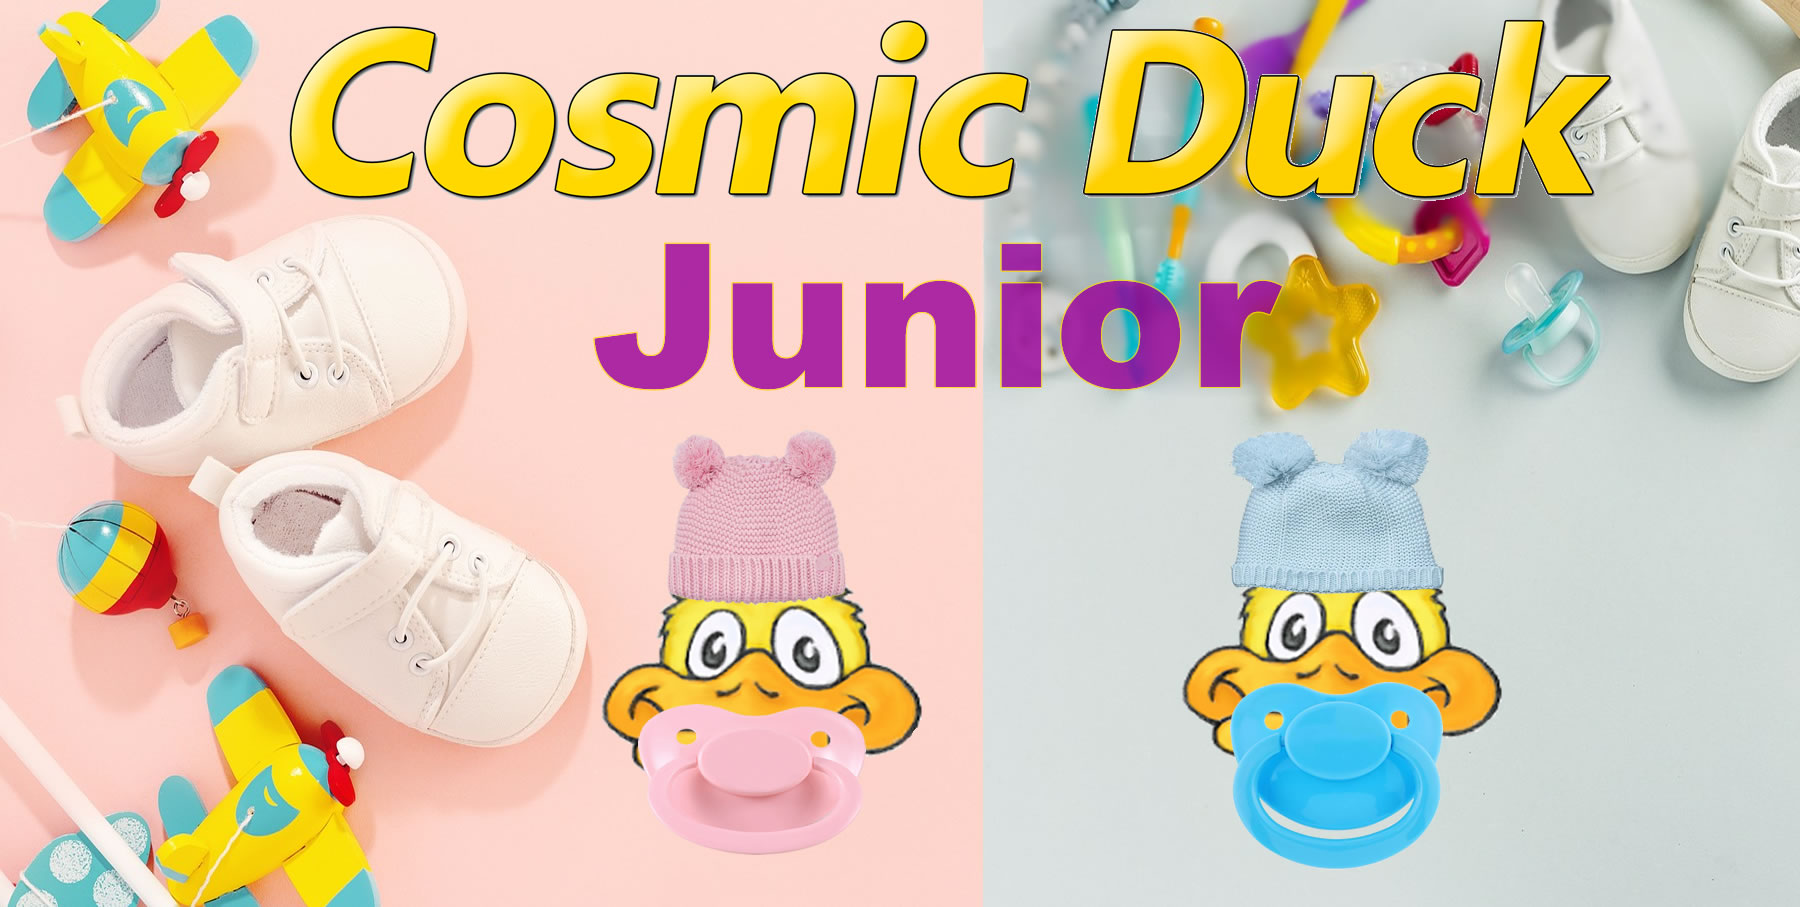 Cosmic Duck Junior It has been released! 🚀